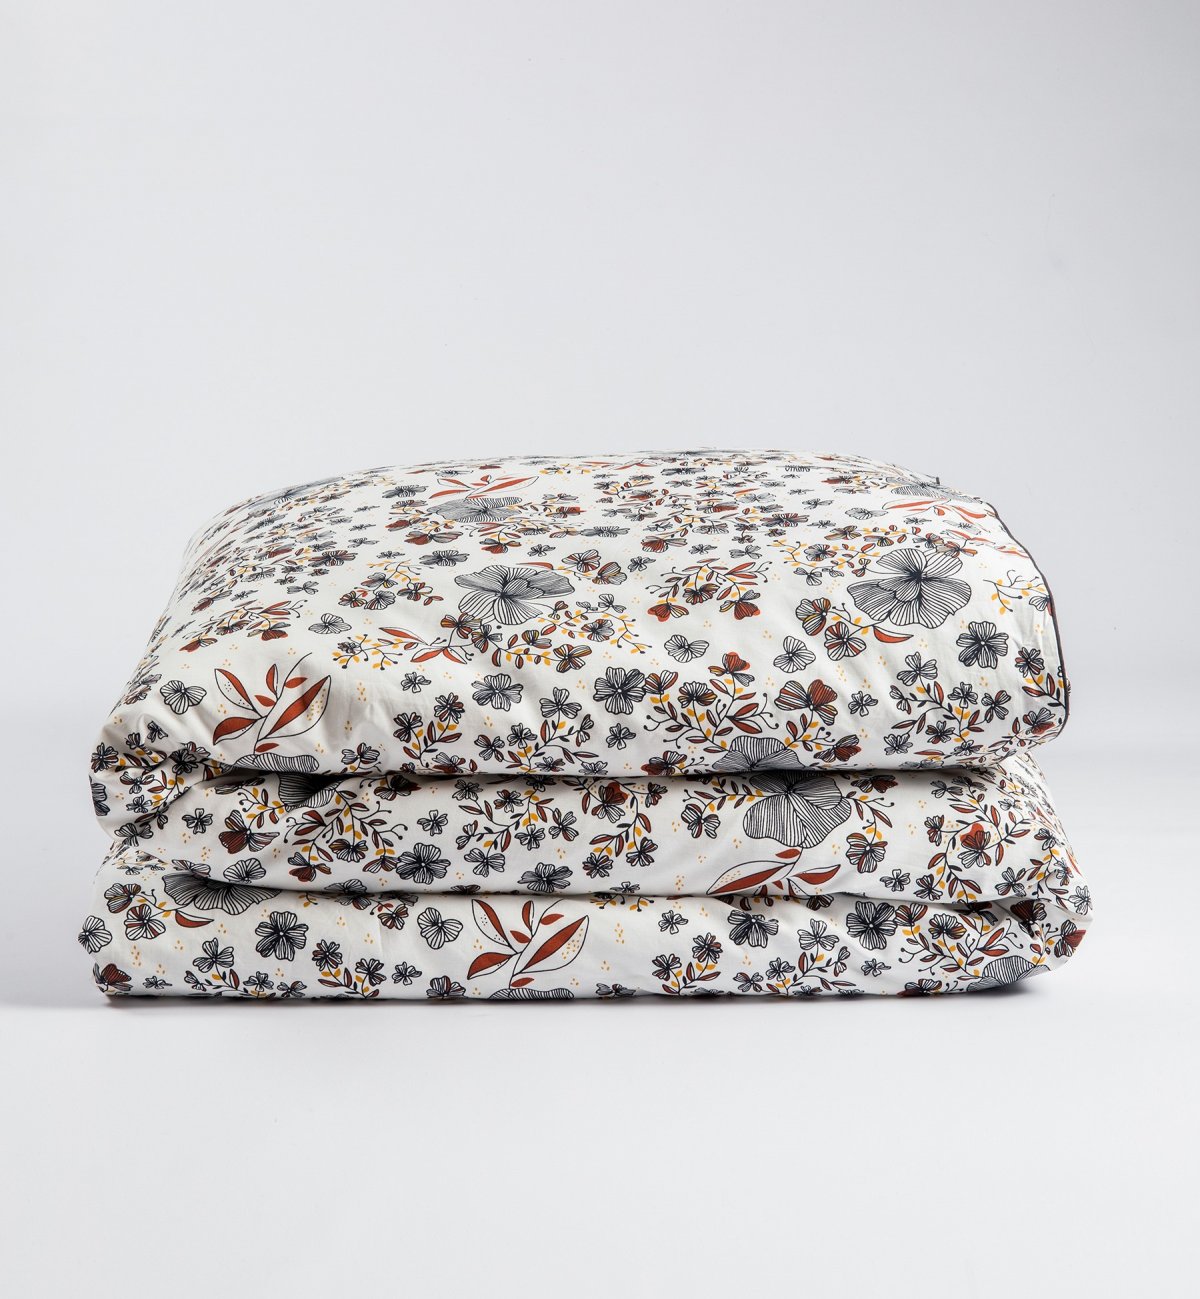 Bettdeckenbezug für Erwachsene aus Bio-Baumwolle mit Ikebana-Muster